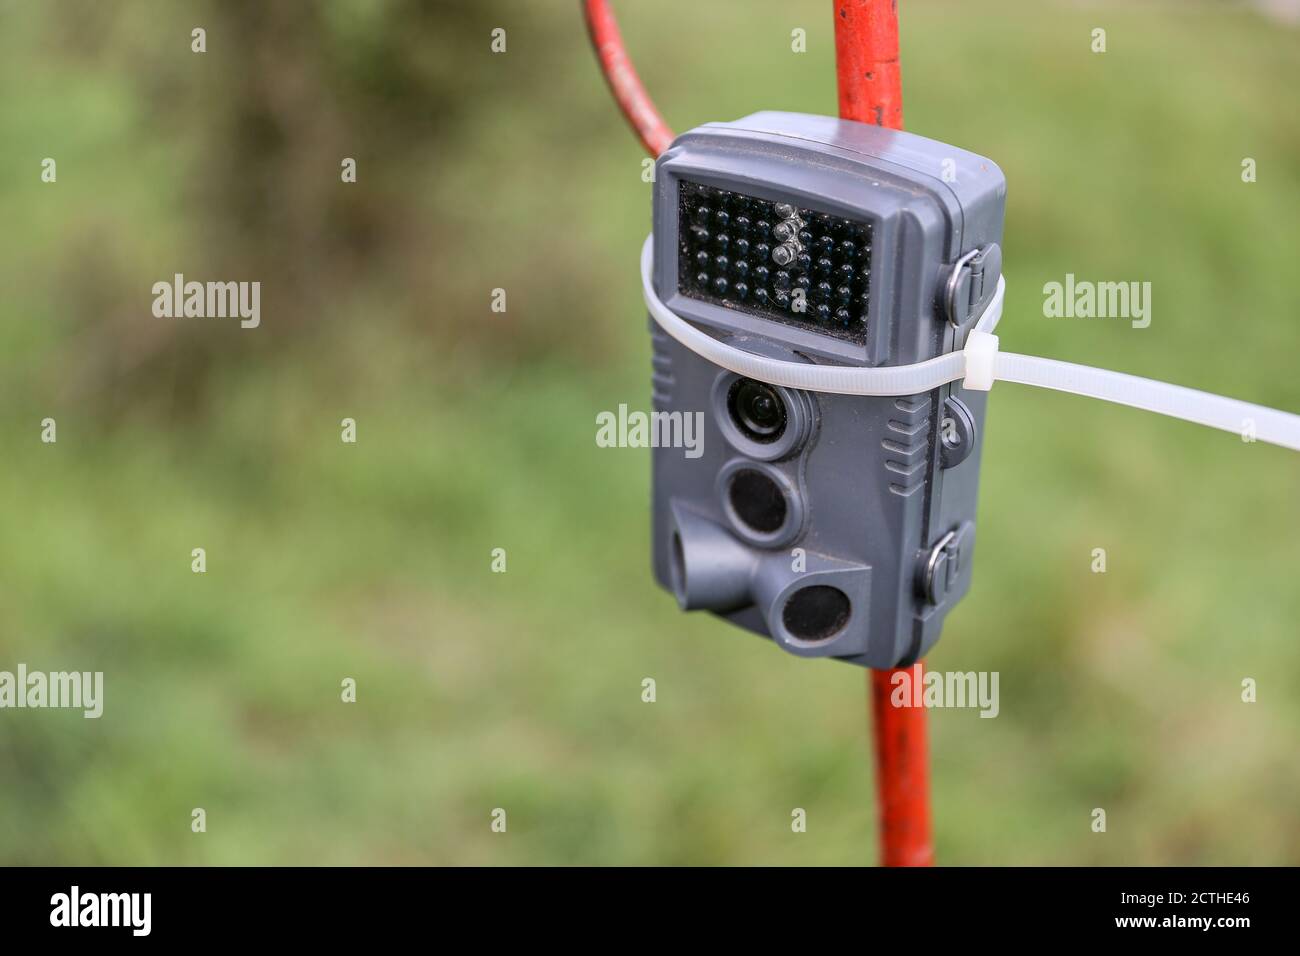 16 settembre 2020, Turingia, Schönewerda: Una telecamera per la fauna selvatica è impostata come una trappola fotografica sulle rive del Unstrut. Foto: Jan Woitas/dpa-Zentralbild/ZB Foto Stock